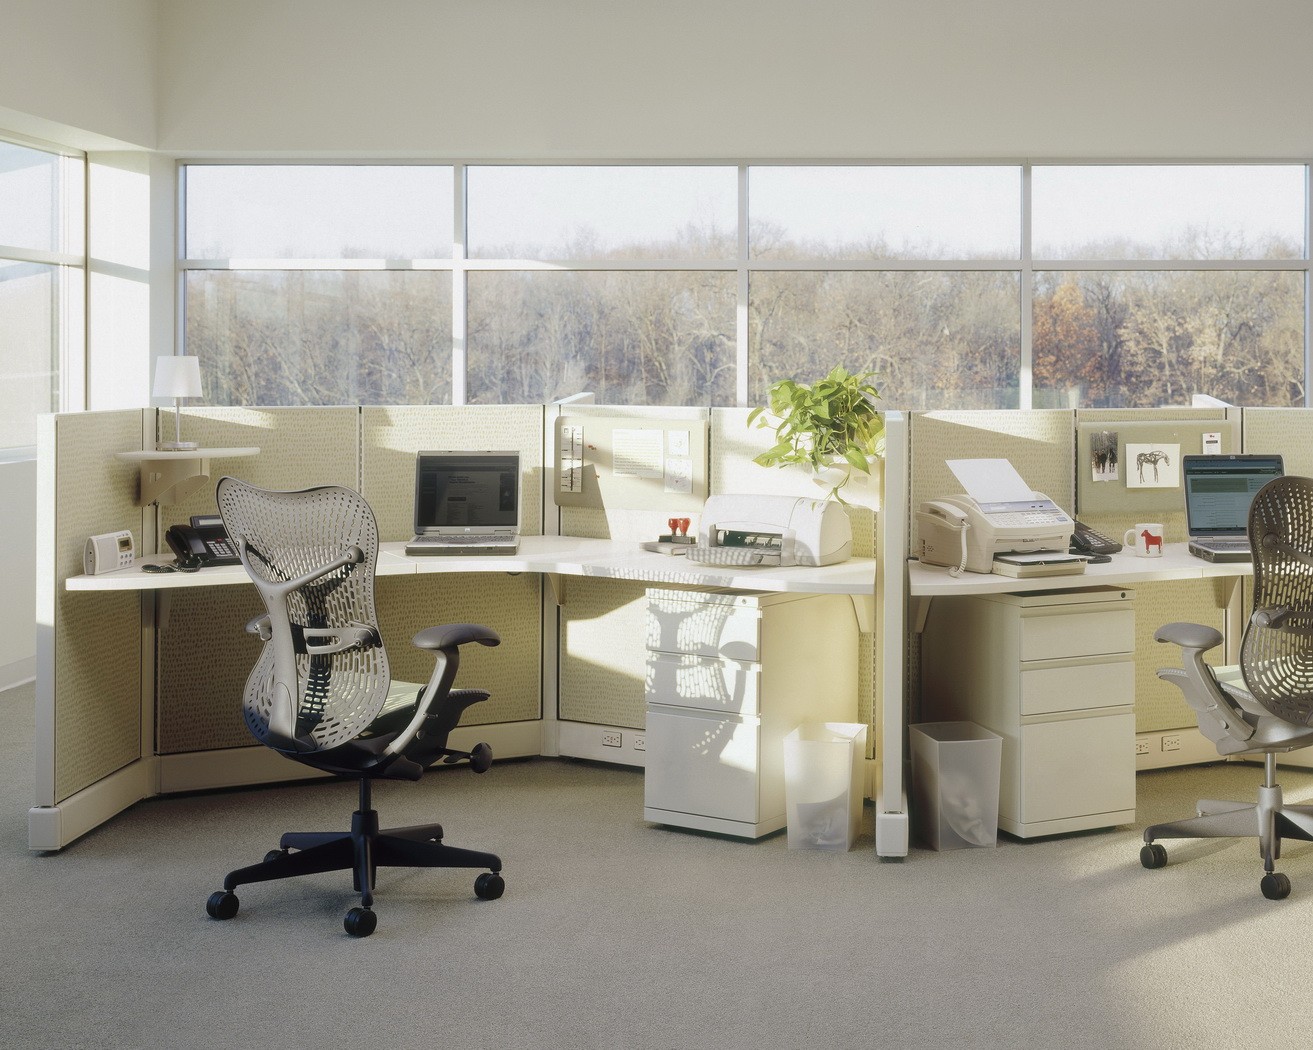 educational-office-interior-design-irvine